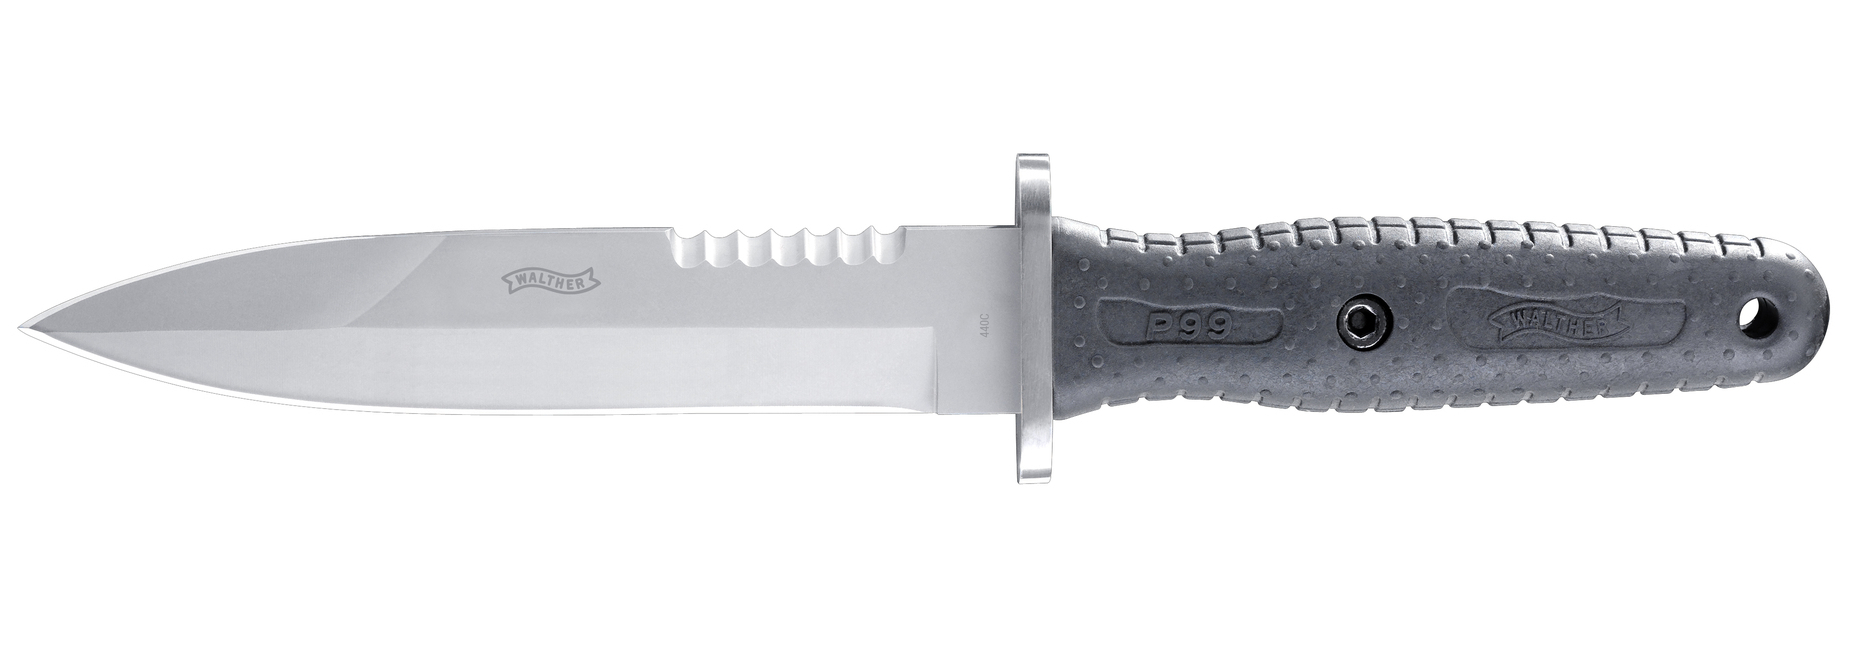 НОЖ WALTHER TACTICAL P99 - Ножи с фиксированным клинком